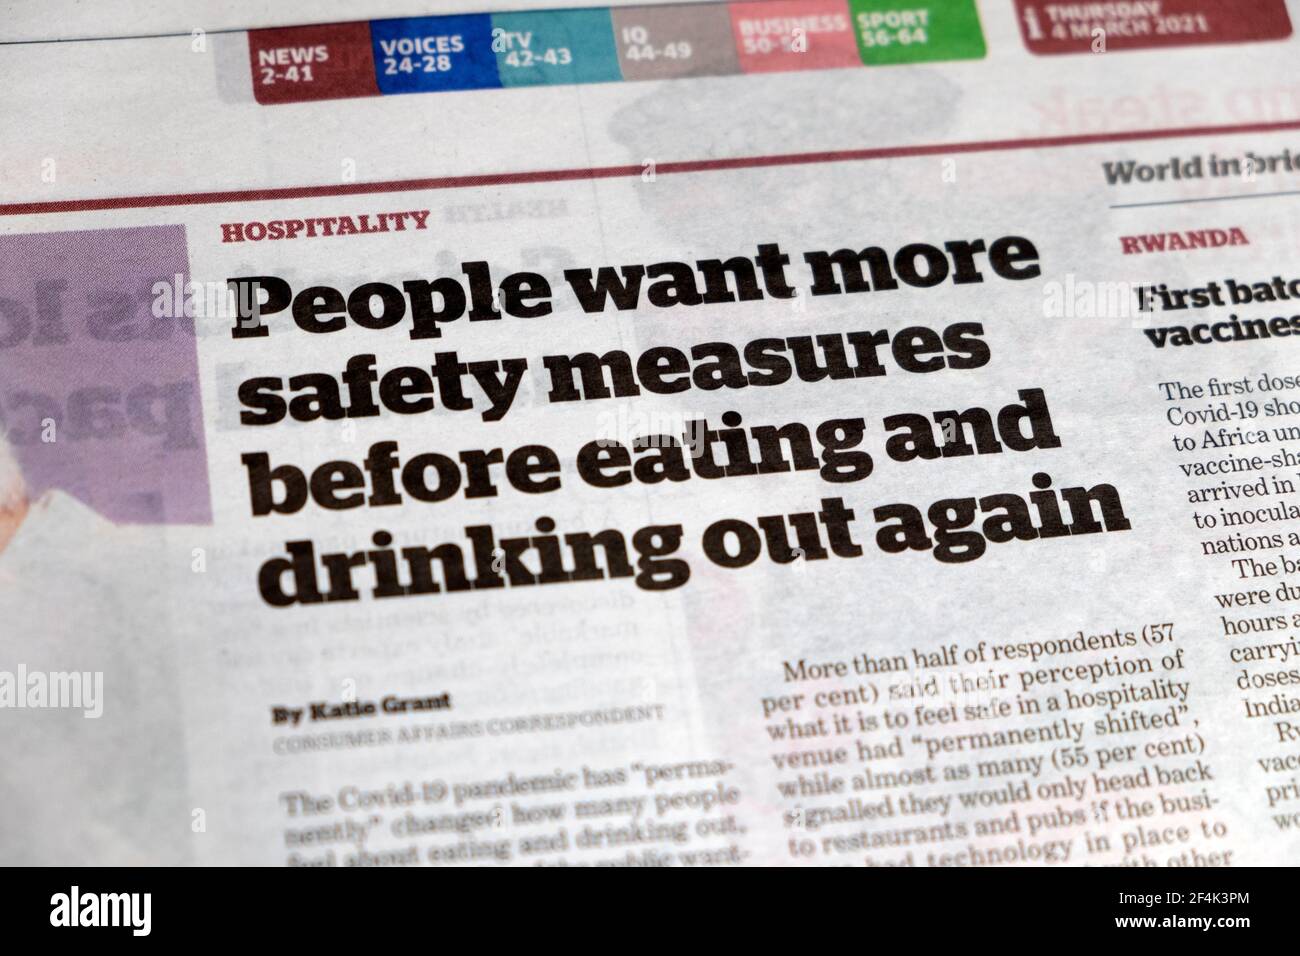 Hospitality News "Menschen wollen mehr Sicherheitsmaßnahmen vor dem Essen und Wieder austrinken' ich Zeitung Schlagzeile Artikel am 3. März 2021 London Großbritannien Stockfoto